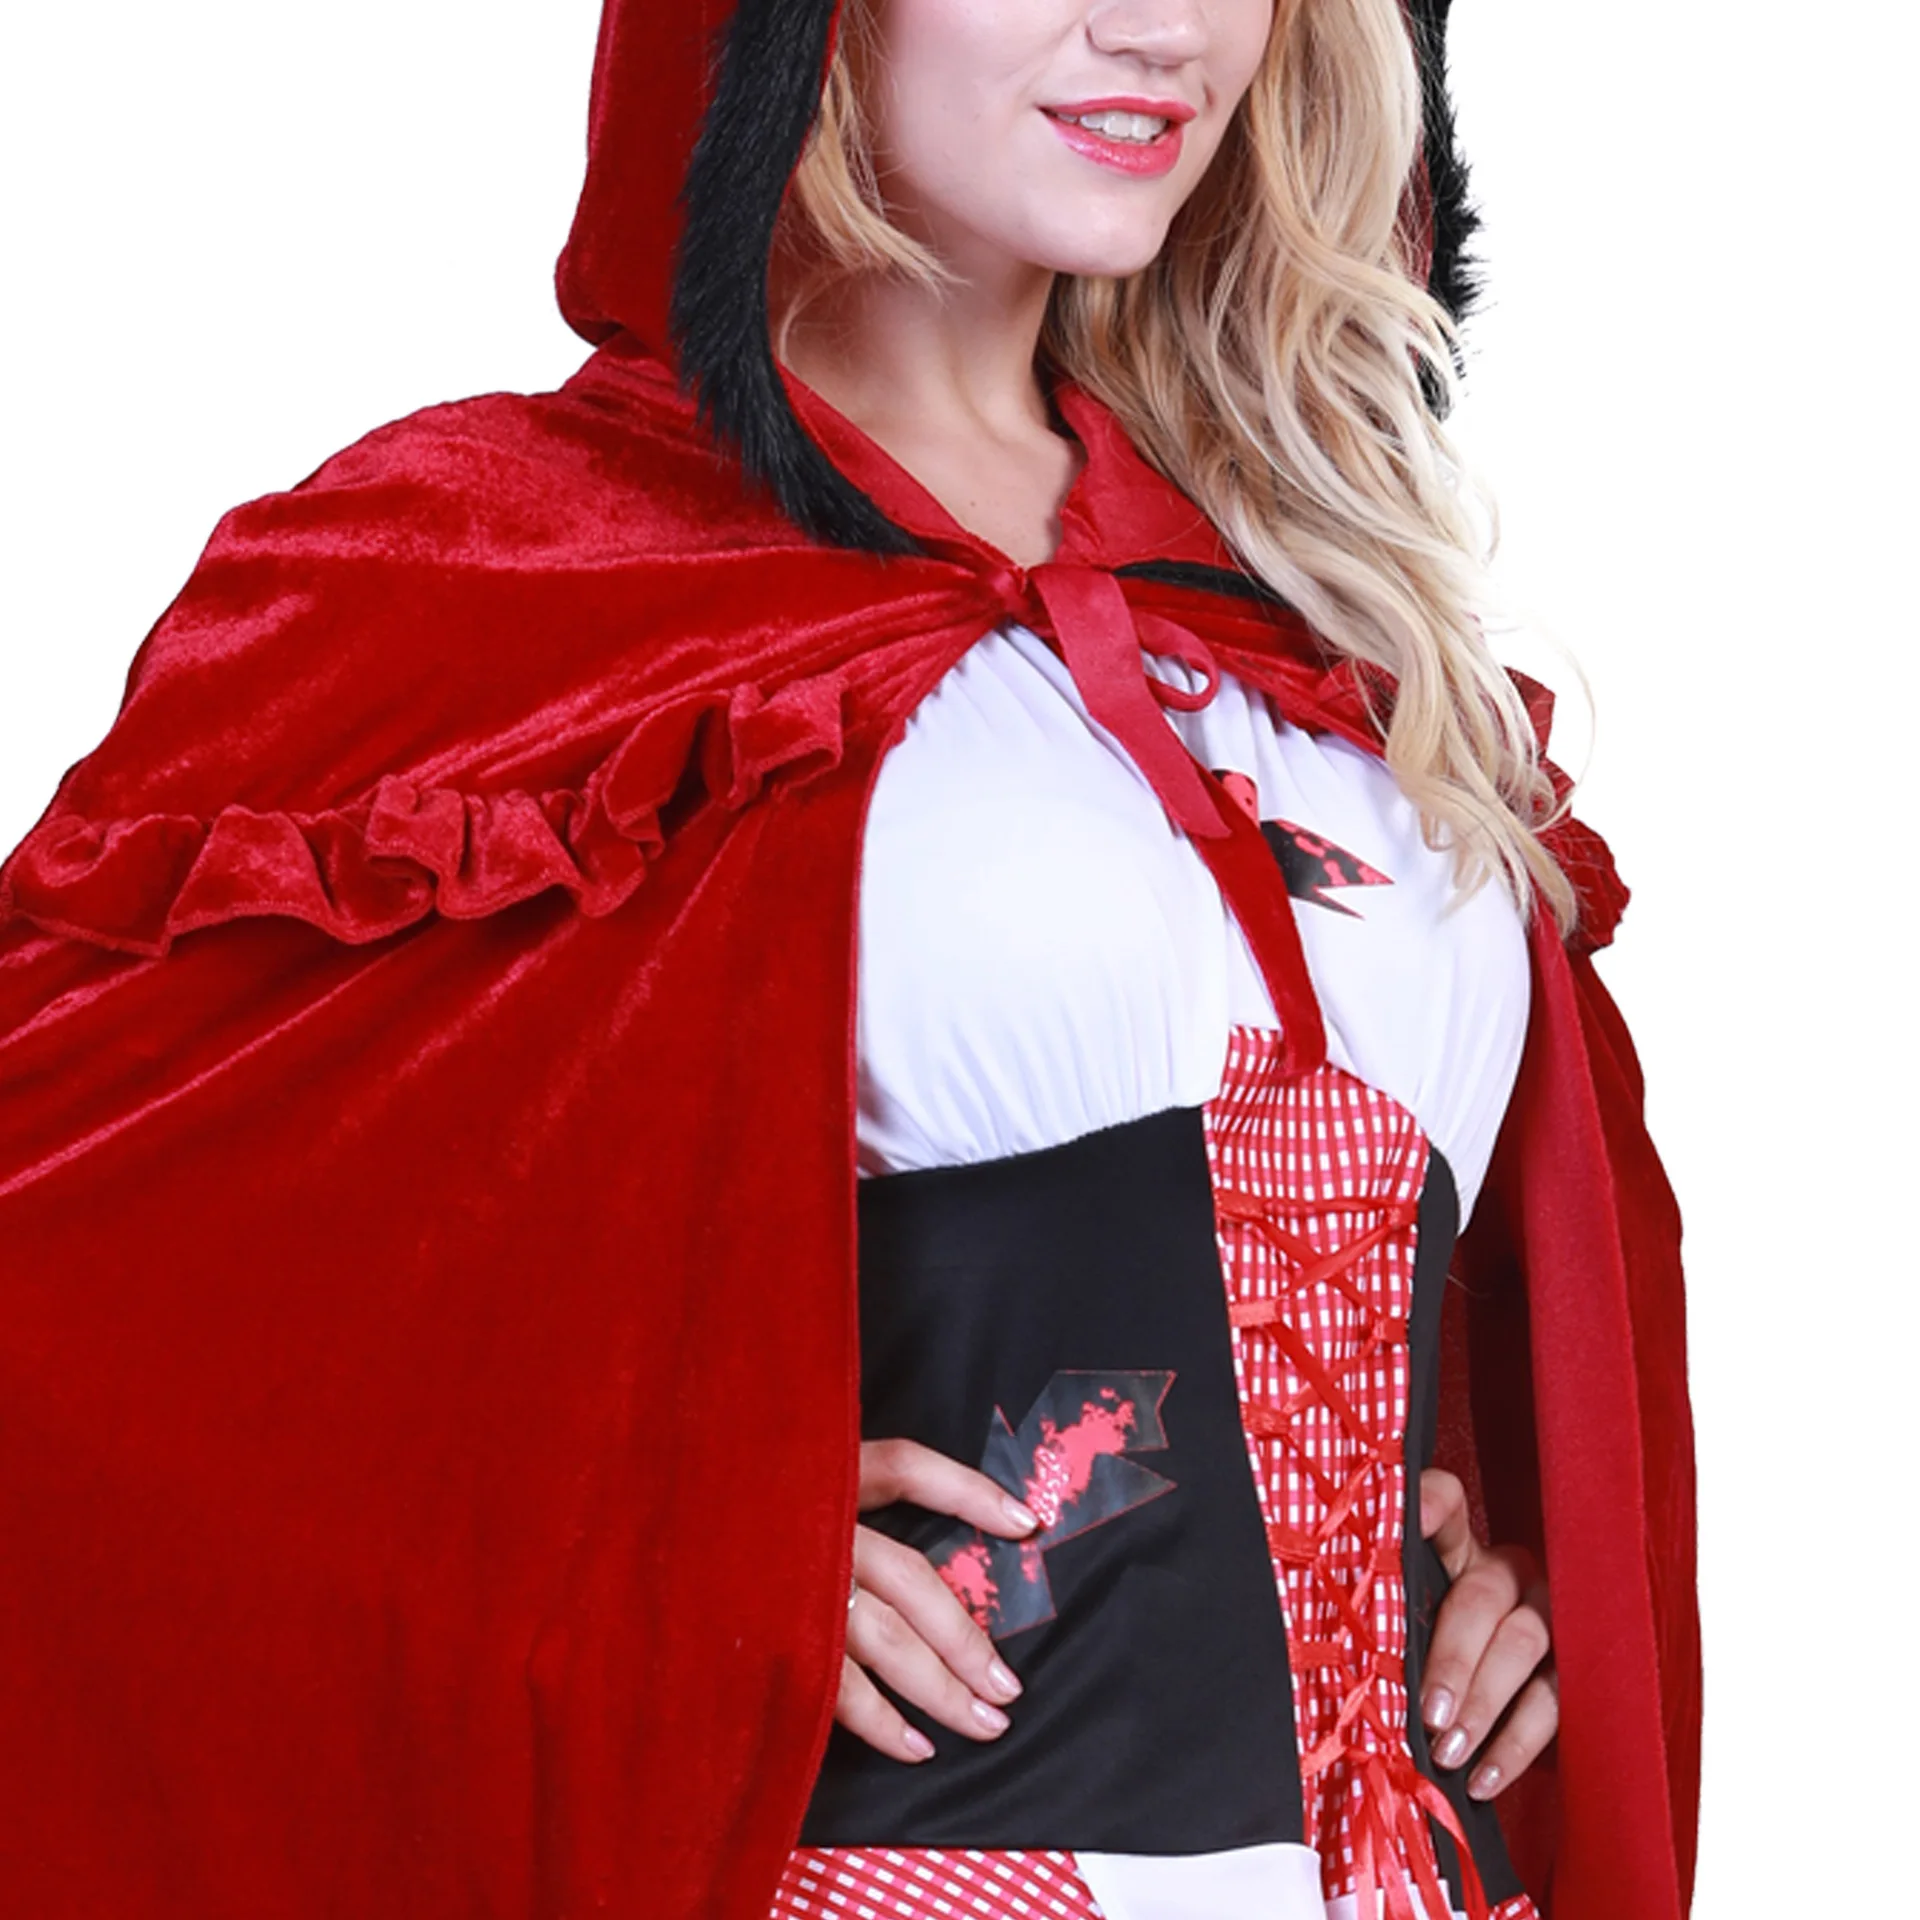 Костюм для взрослых женщин на Хеллоуин костюм Красная шапочка халат с капюшоном леди платье с вышивкой вечерние плащ для девочек